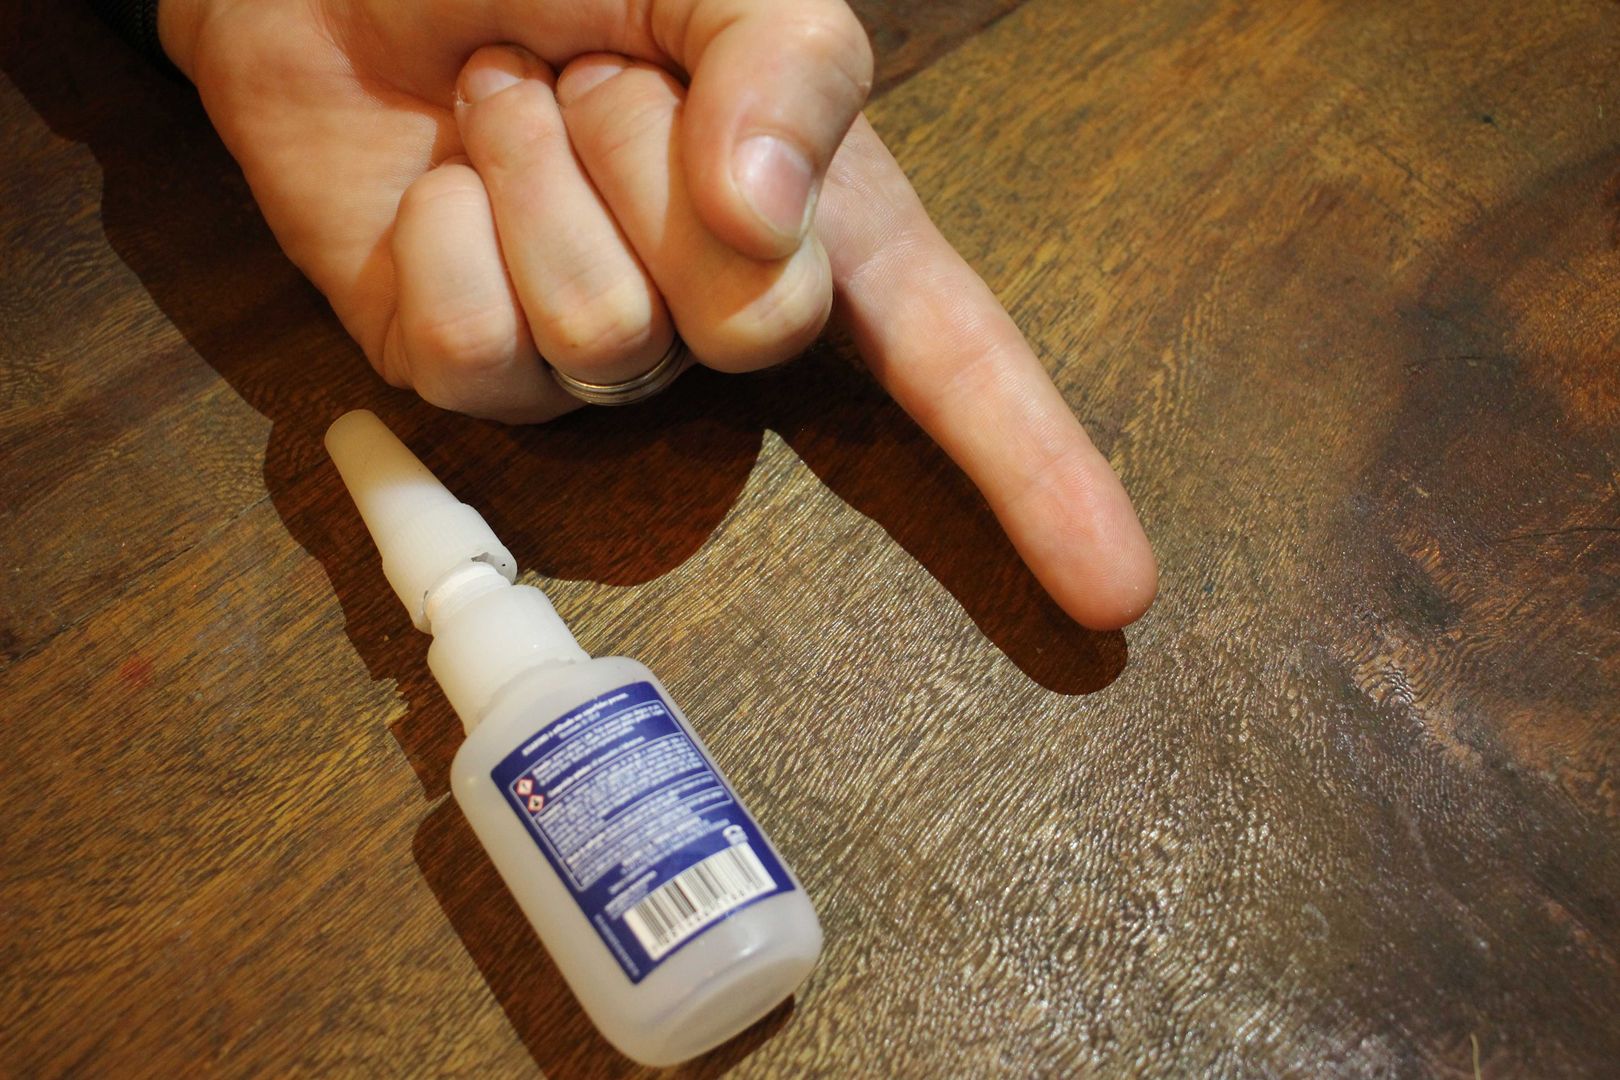 Comment enlever de la colle super-glue de vos doigts - DIY Facile ...